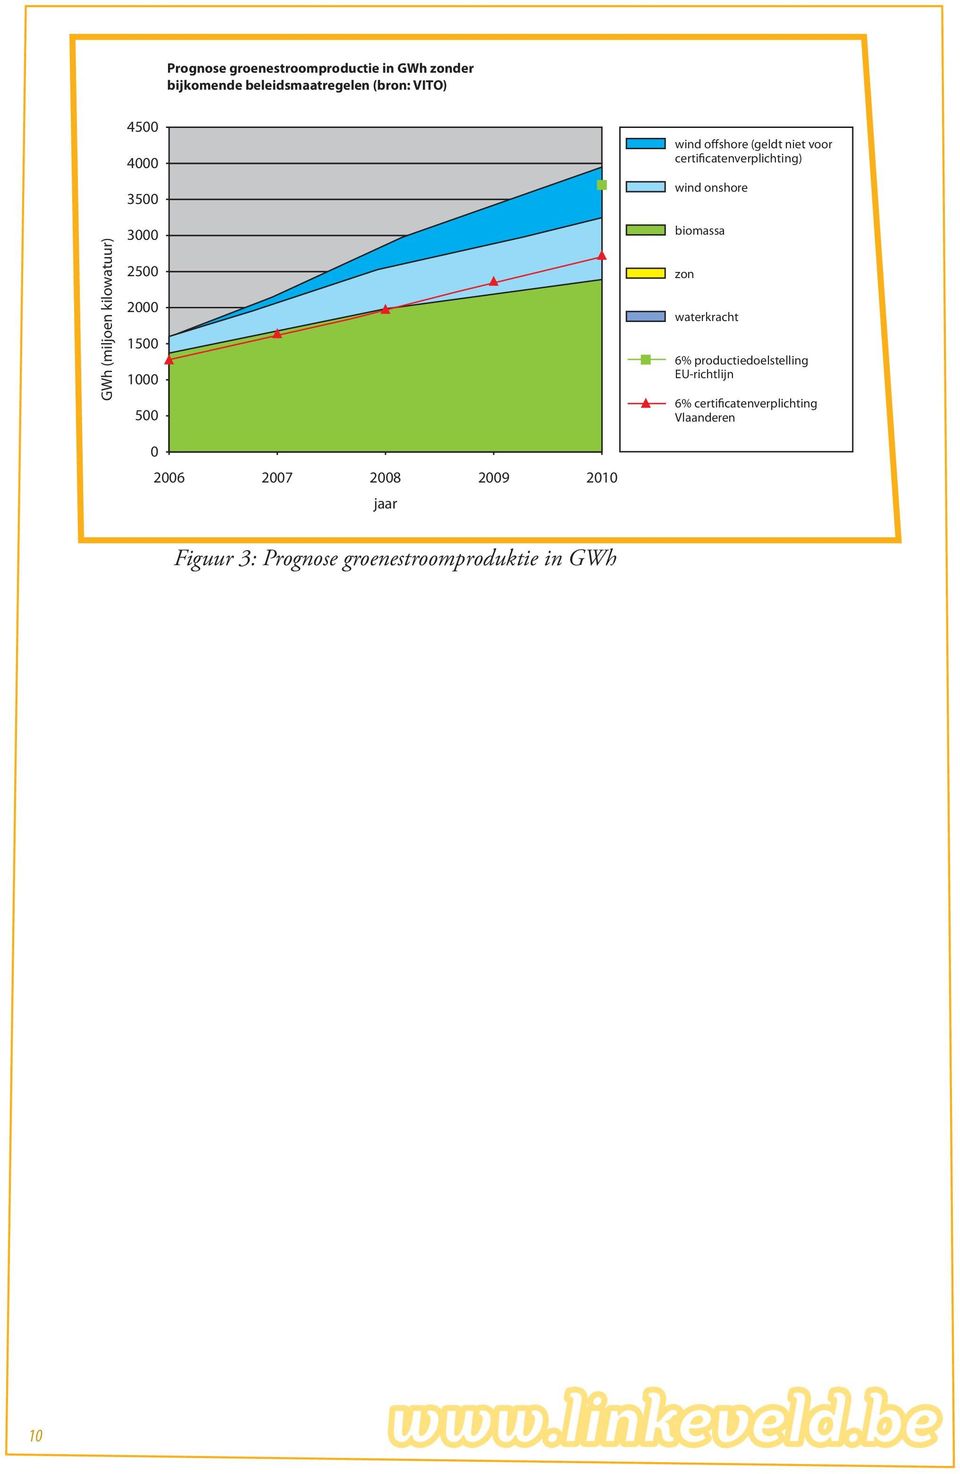 certificatenverplichting) wind onshore biomassa zon waterkracht 6% productiedoelstelling EU-richtlijn